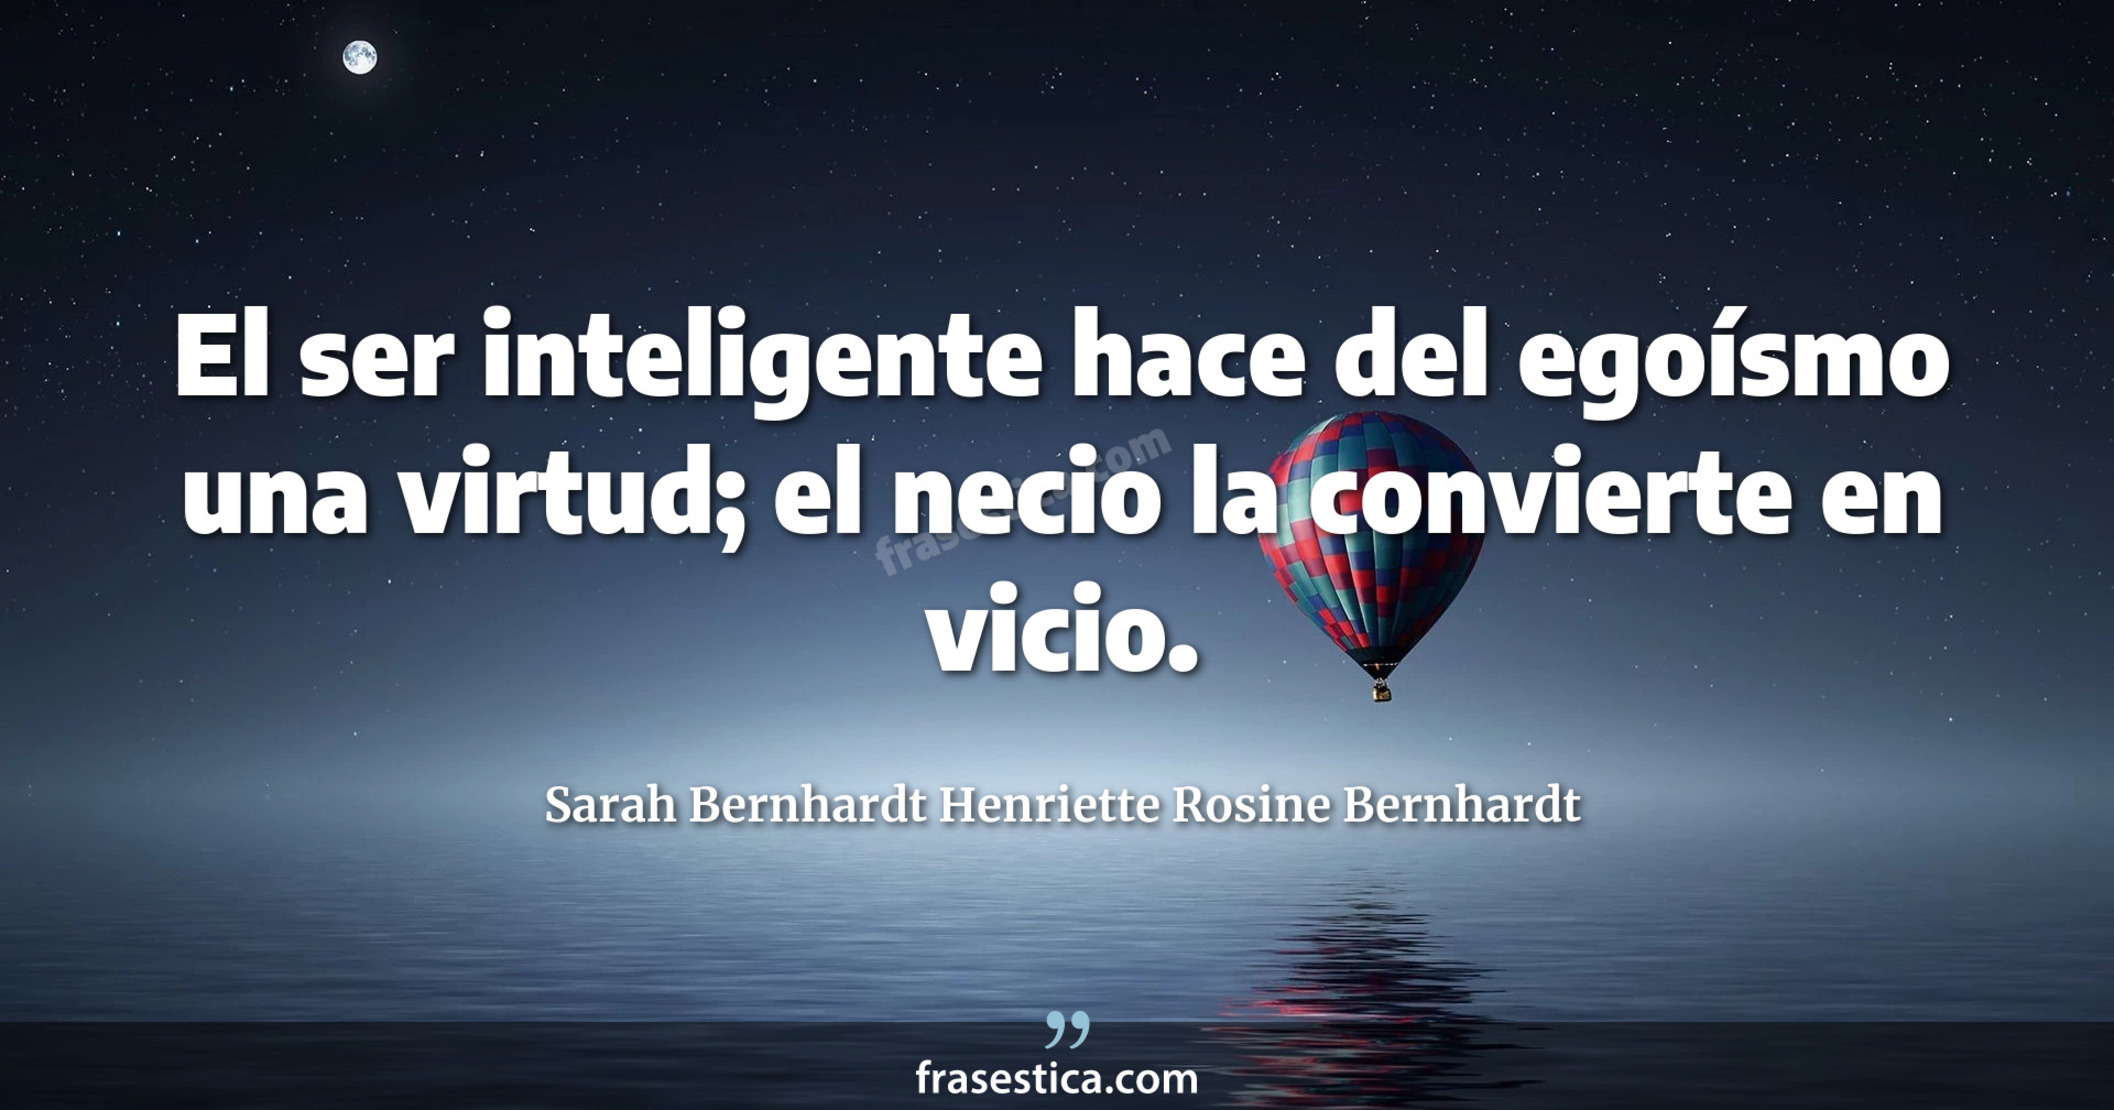 El ser inteligente hace del egoísmo una virtud; el necio la convierte en vicio. - Sarah Bernhardt Henriette Rosine Bernhardt